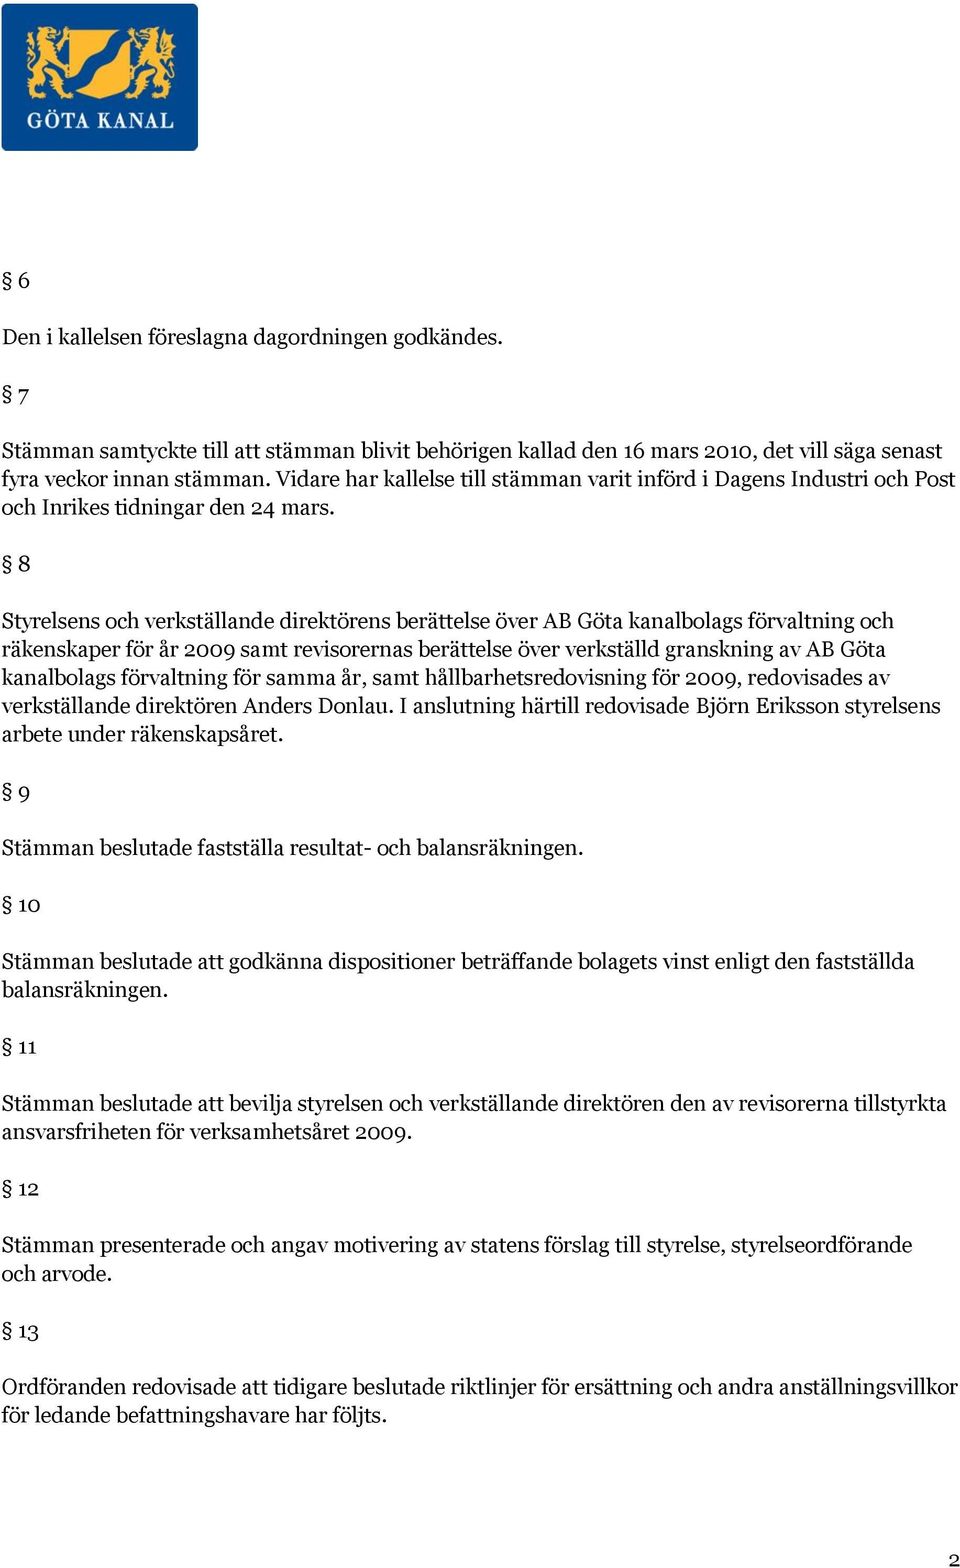 8 Styrelsens och verkställande direktörens berättelse över AB Göta kanalbolags förvaltning och räkenskaper för år 2009 samt revisorernas berättelse över verkställd granskning av AB Göta kanalbolags